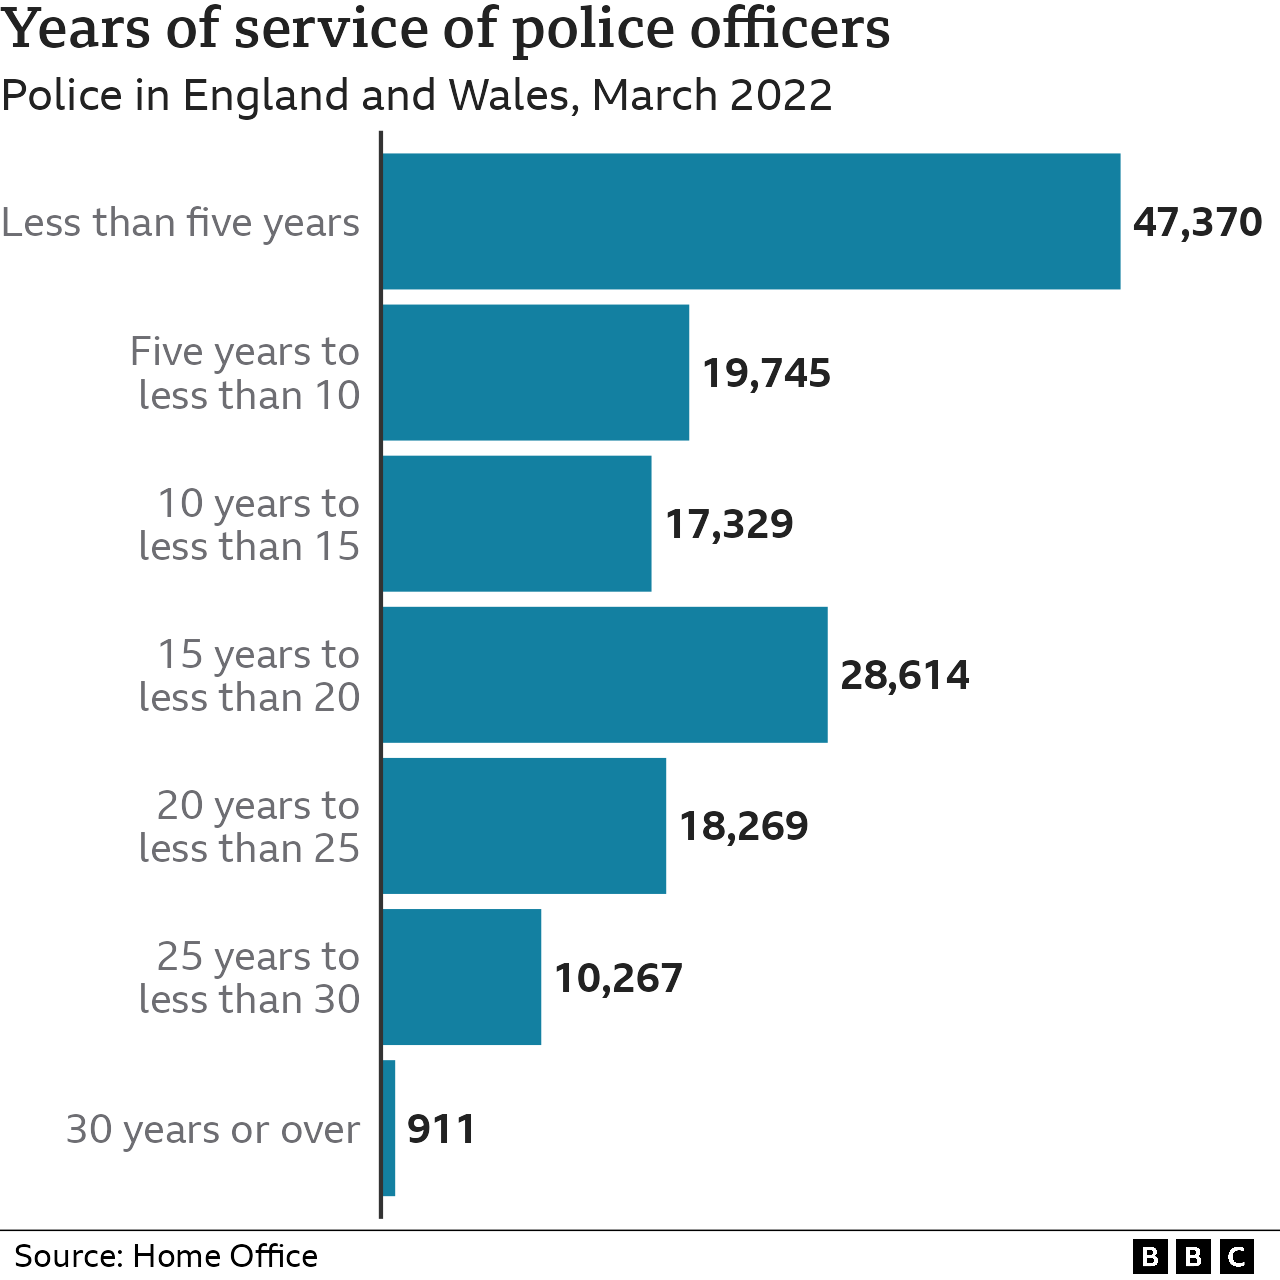 Гистограмма, показывающая годы службы полицейских в Англии и Уэльсе по состоянию на март 2022 года — самая большая группа проработала менее пяти лет